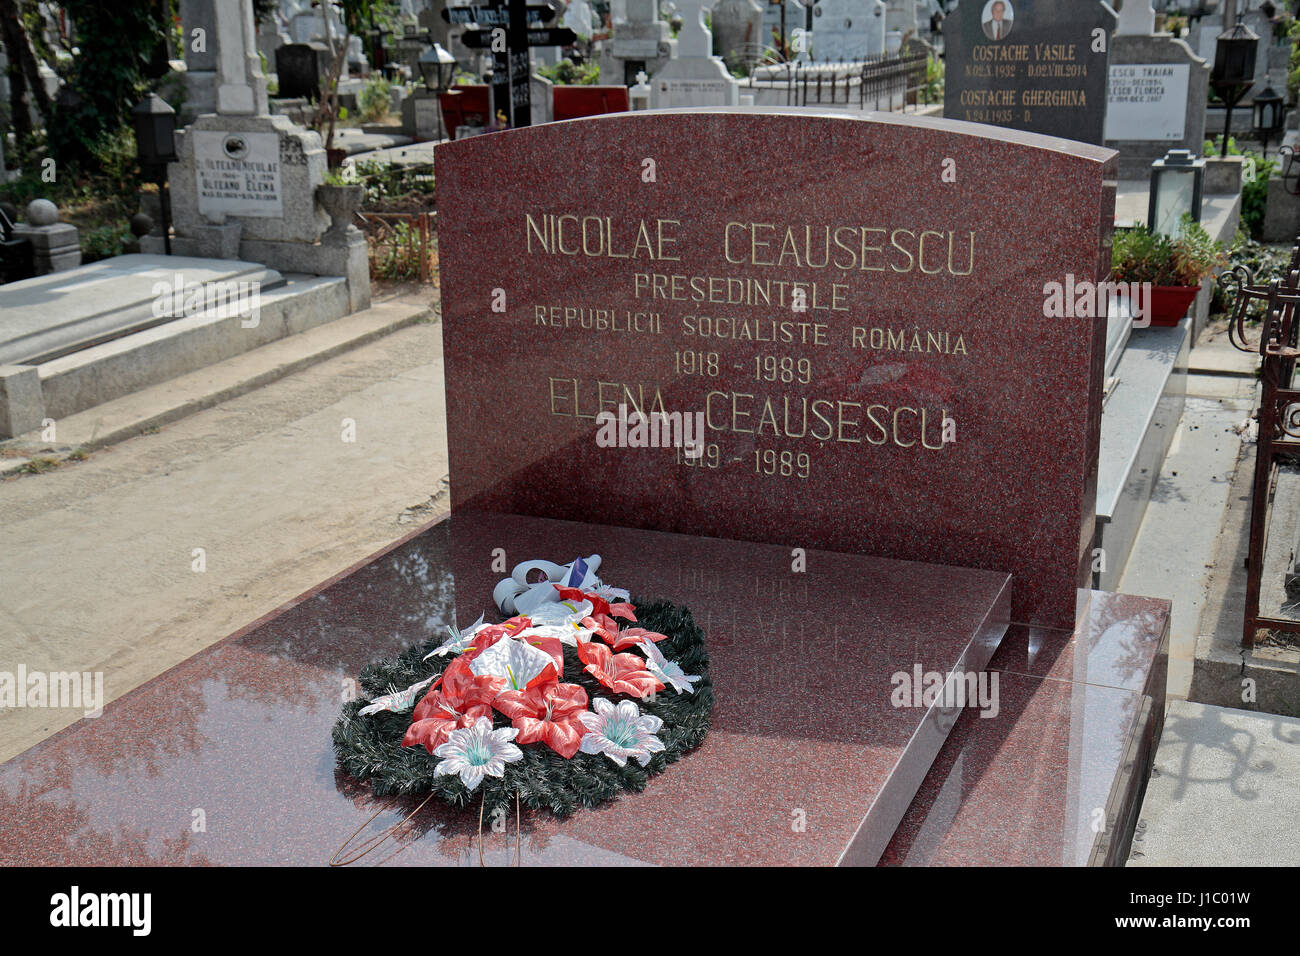 Das gemeinsame Grab von Nicolae & Elena Ceausescu, Rumäniens Ex-Diktator während der kommunistischen Ära, Ghencea-Friedhof, Bukarest, Rumänien. Stockfoto